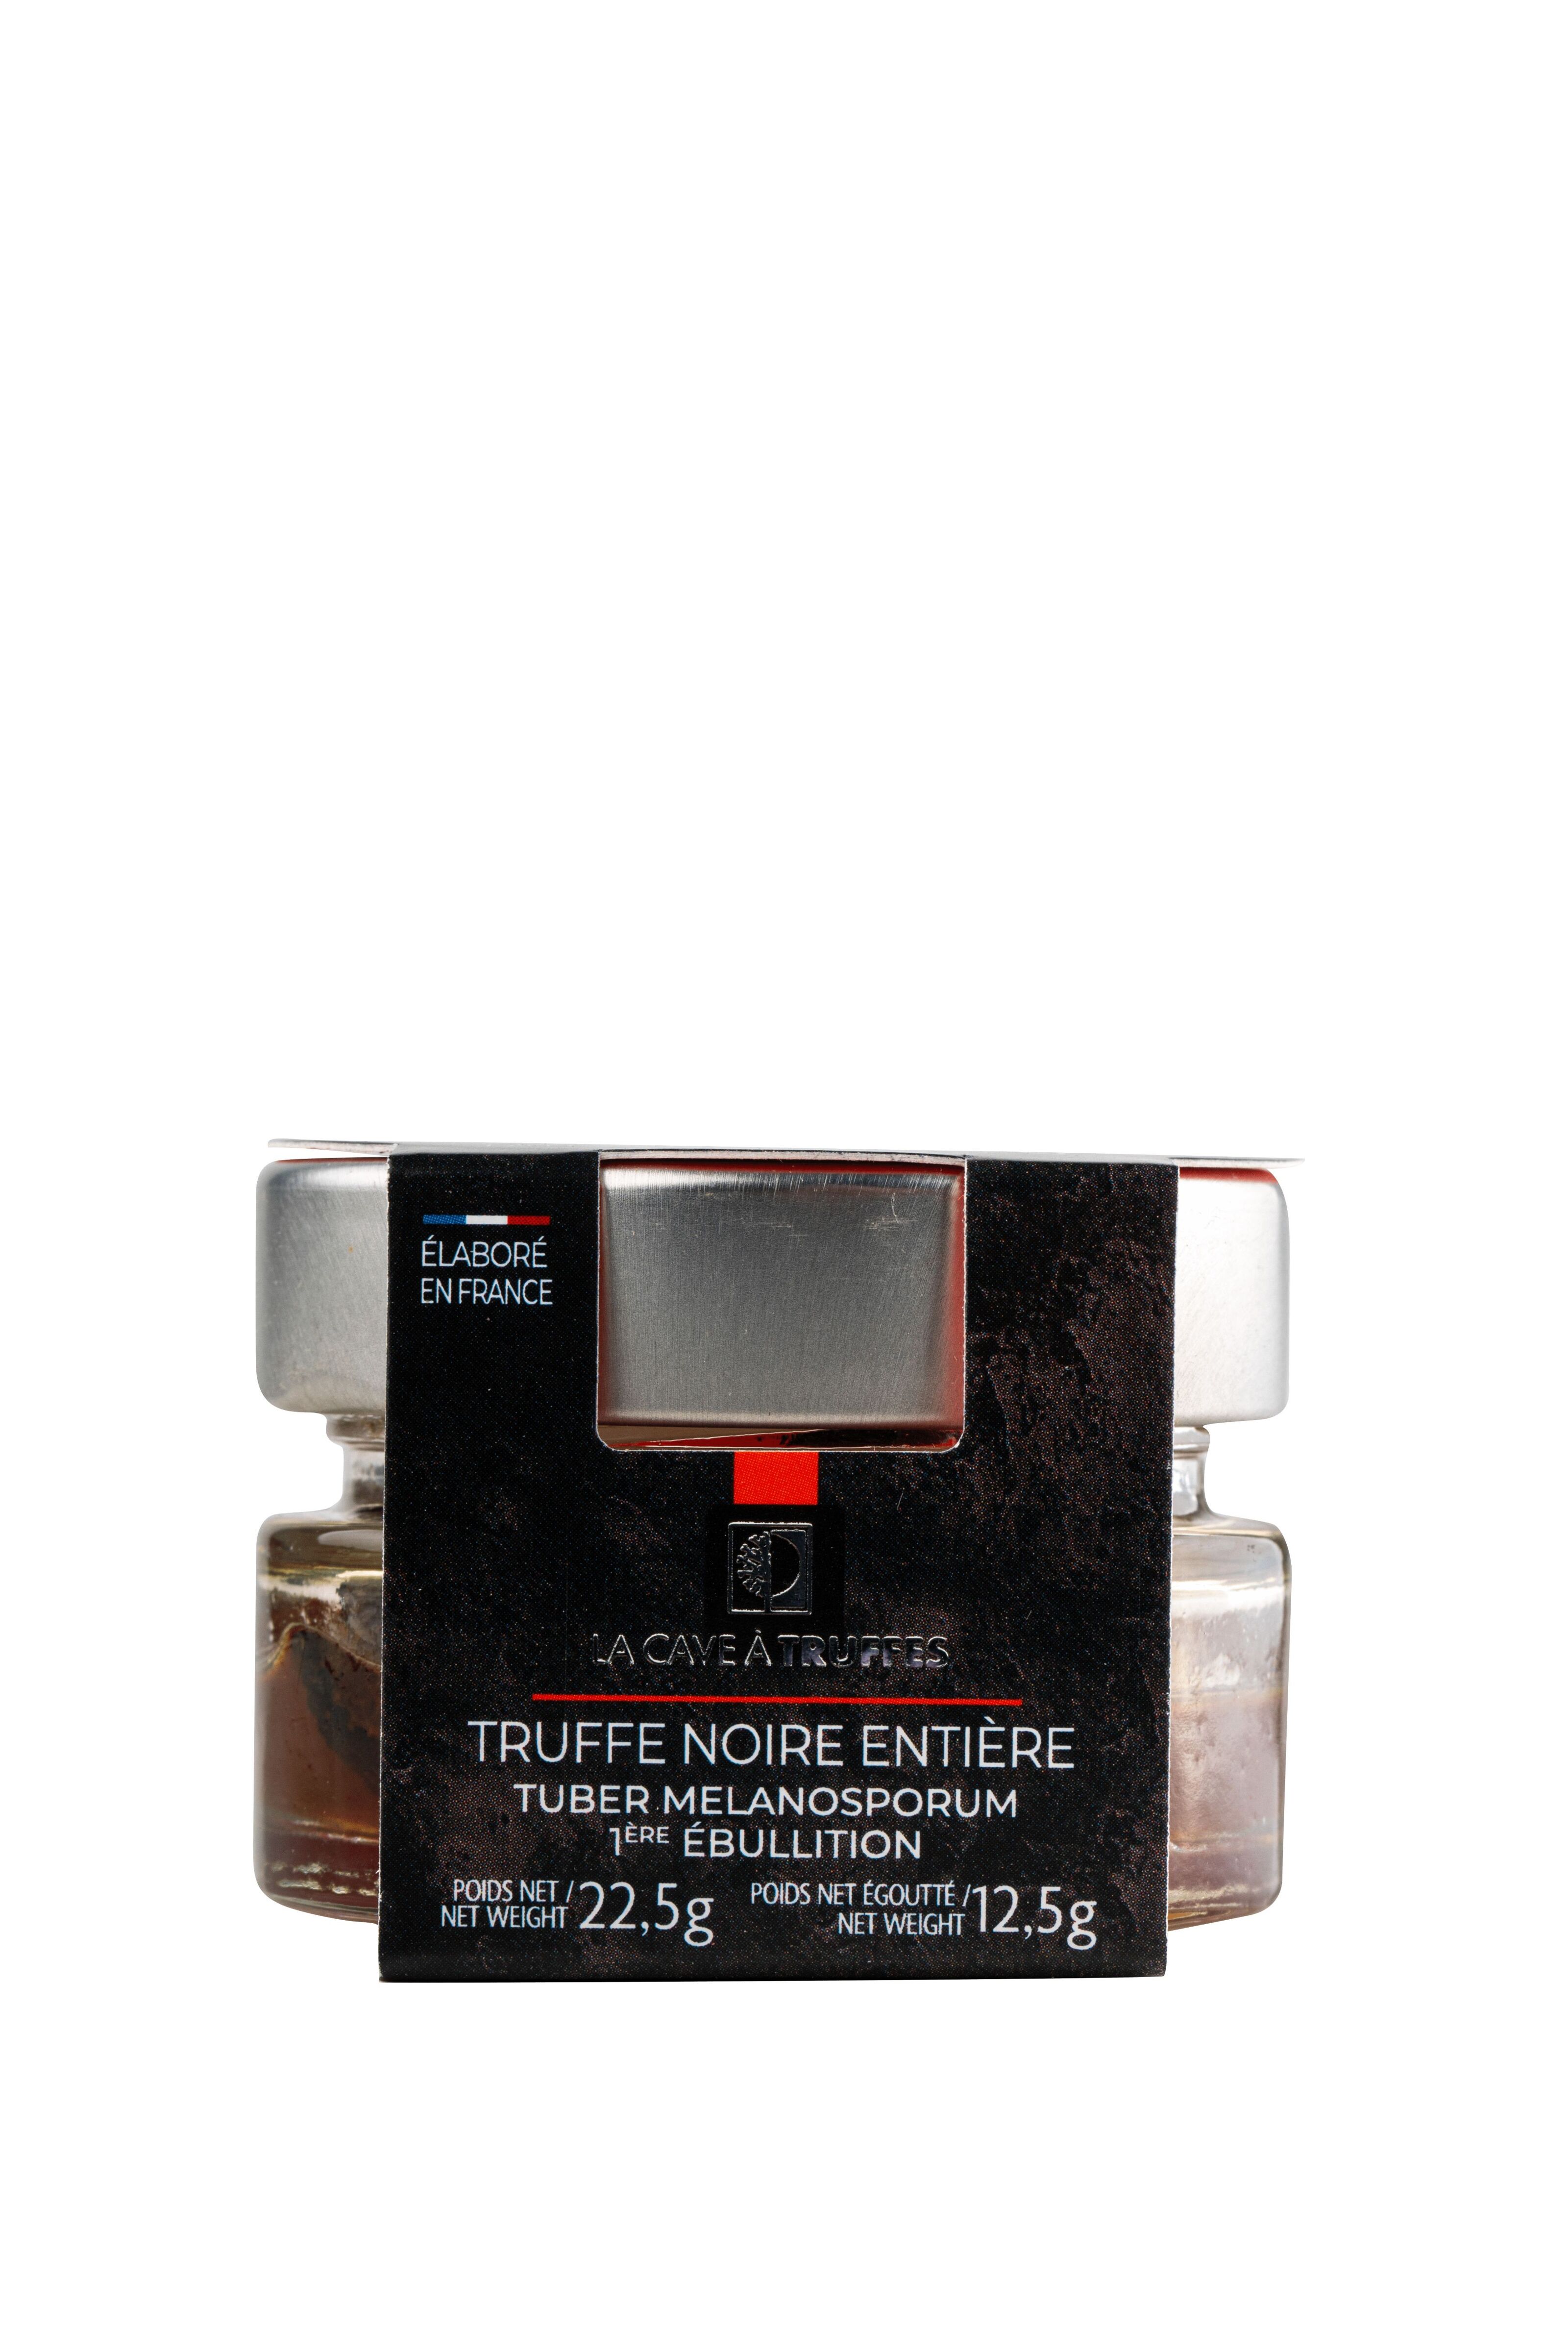 Brisures de truffe noire Tuber Melanosporum 12,5g - Carré de Boeuf Rungis